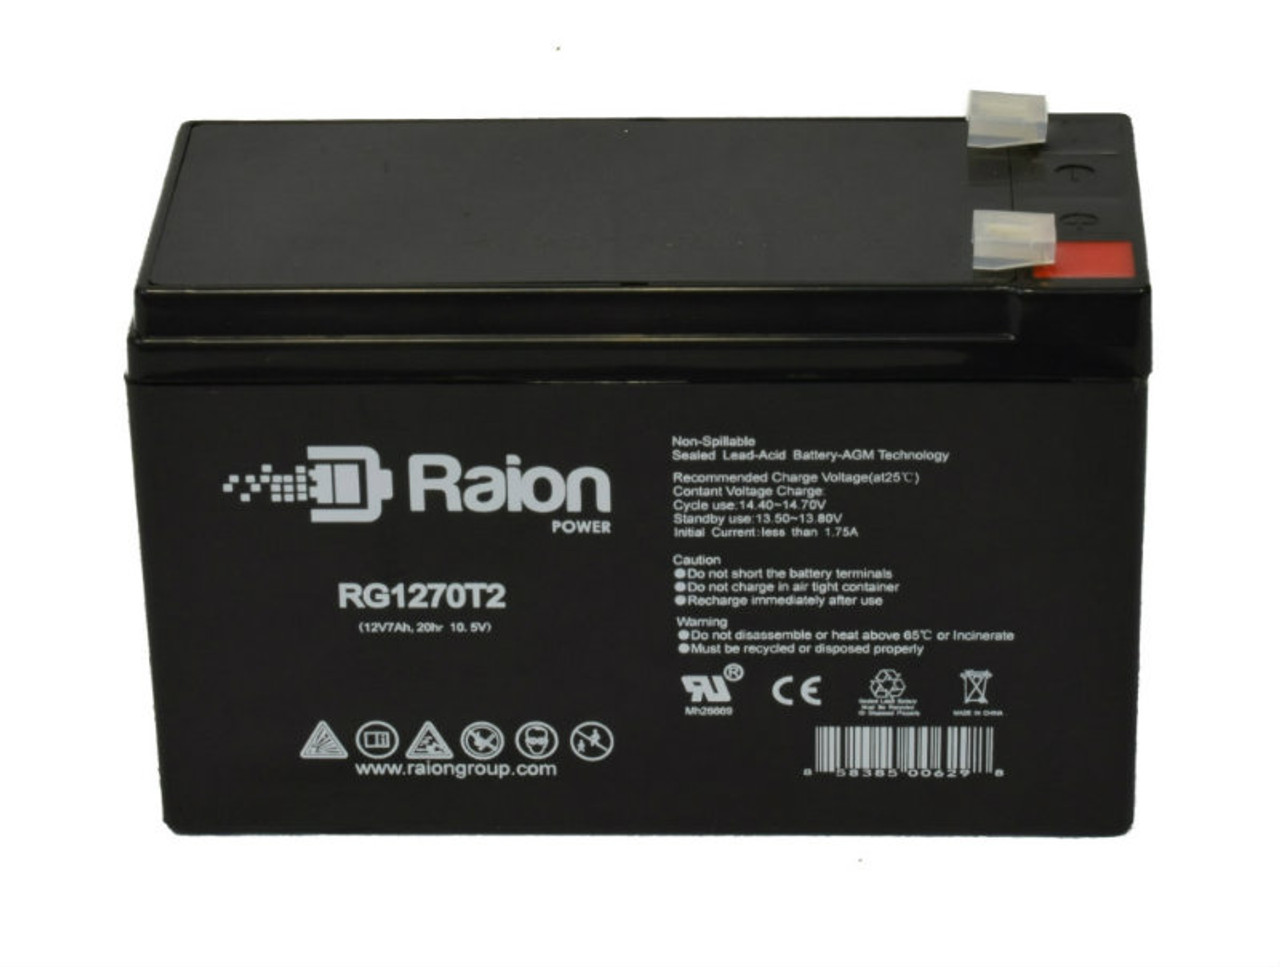 Raion Power RG1270T2 12V 7Ah Lead Acid Battery for Handicare 950 Straight Stairlift